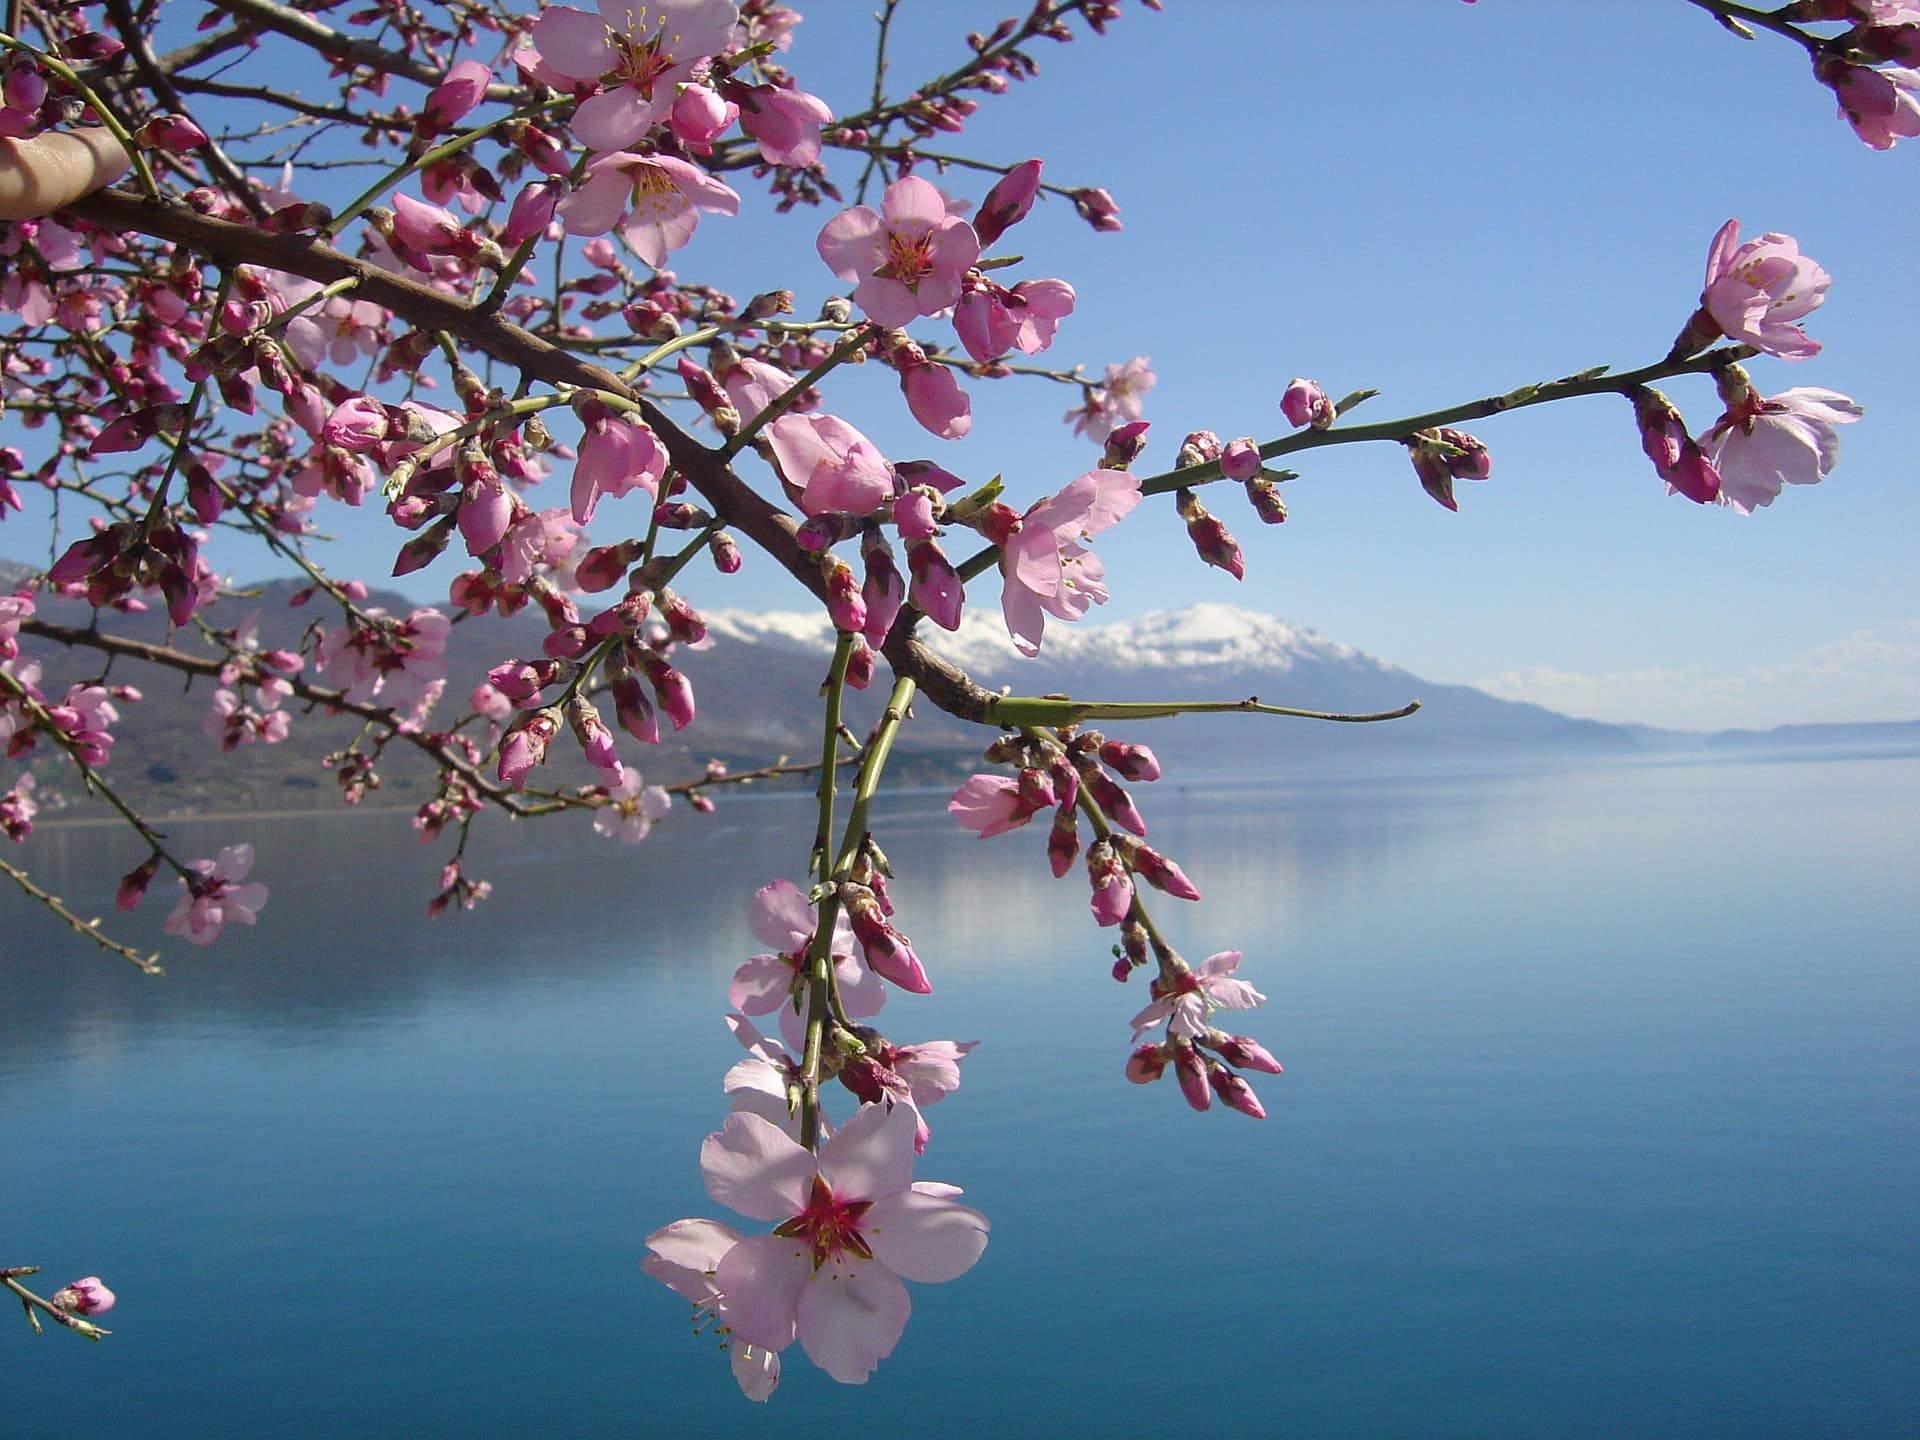 Lac du bourget, image par alltimunii de Pixabay 